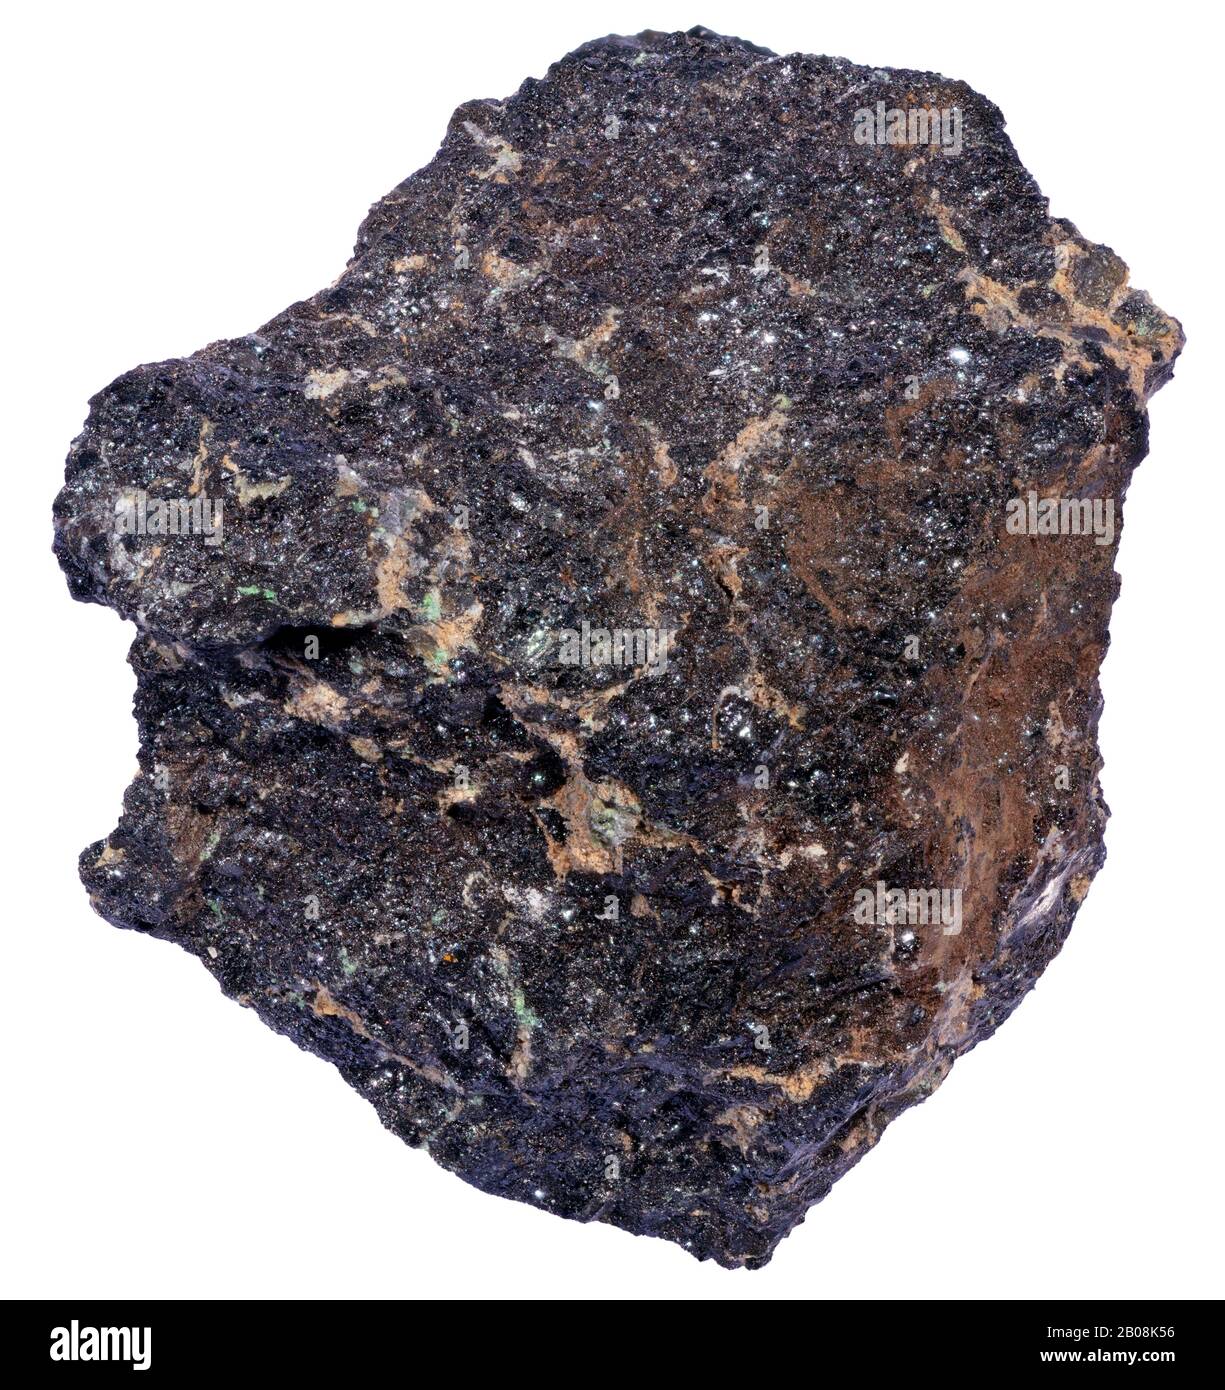 Hornfels de pyroxène, Métamorphisme de contact, Grenville (Québec) les faciès de pyroxène-hornfels sont les faciès métamorphiques de contact avec la température la plus élevée Banque D'Images